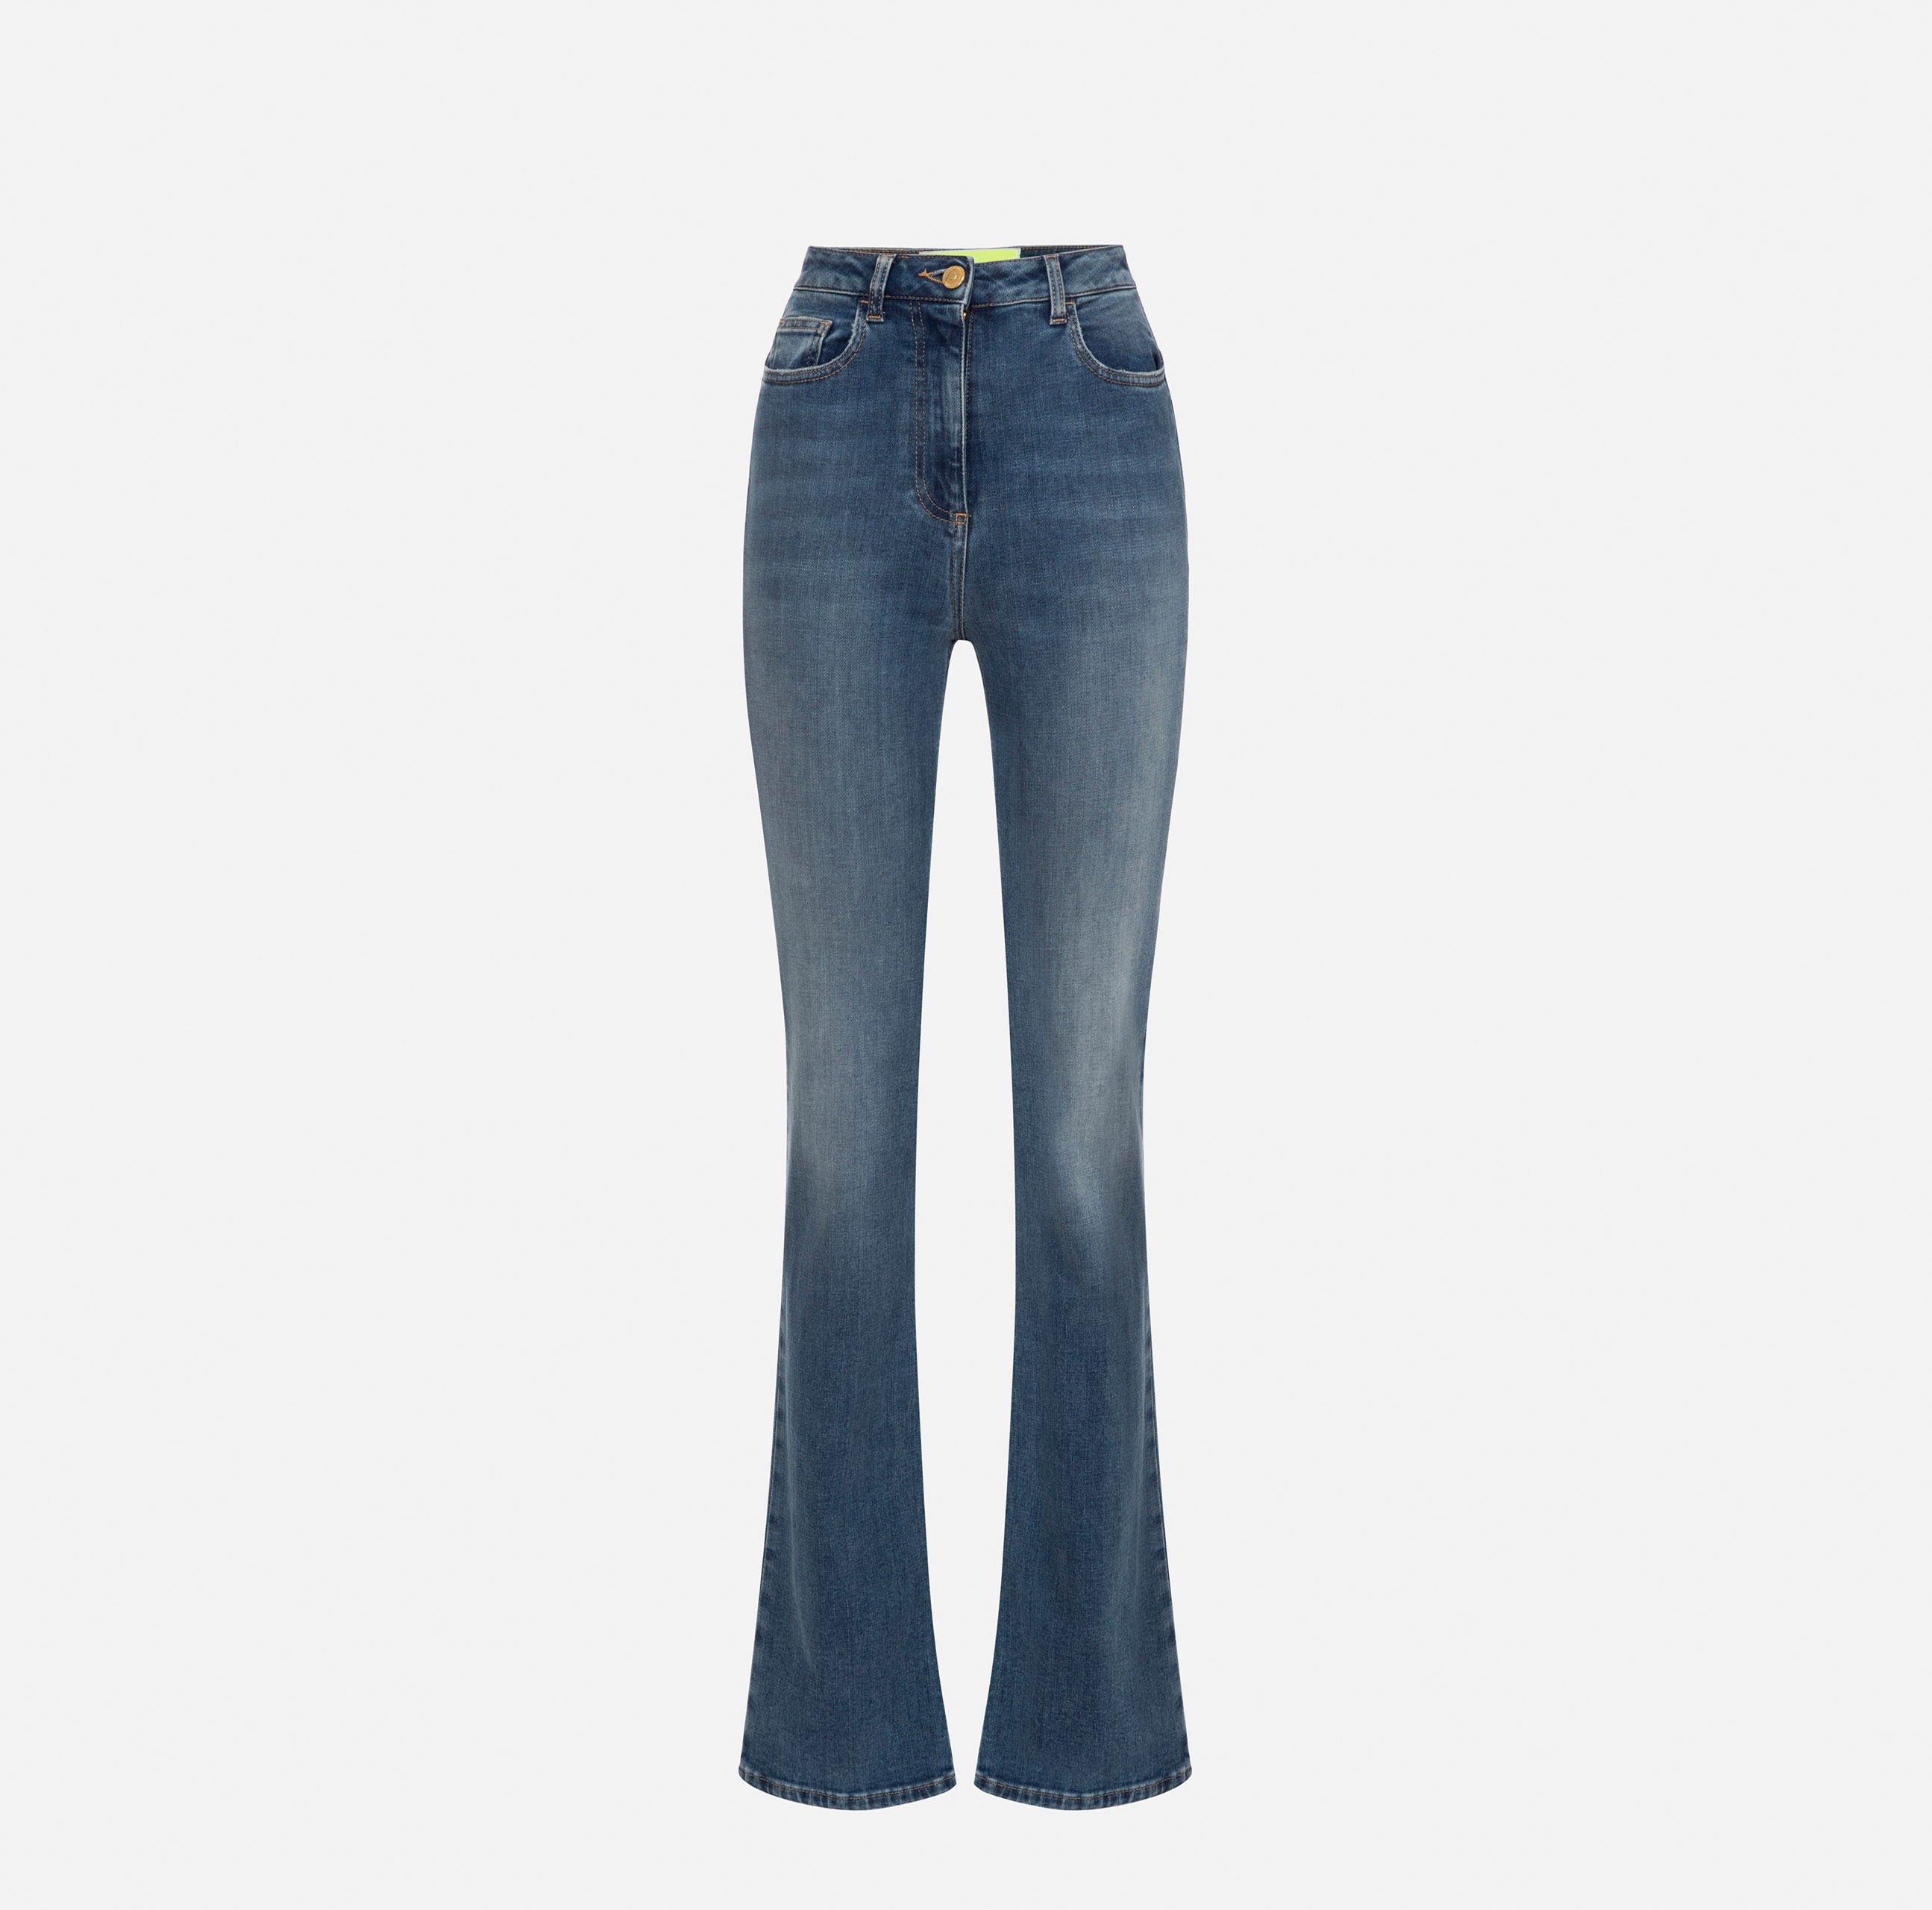 Jeans mit Schlagbein - Elisabetta Franchi